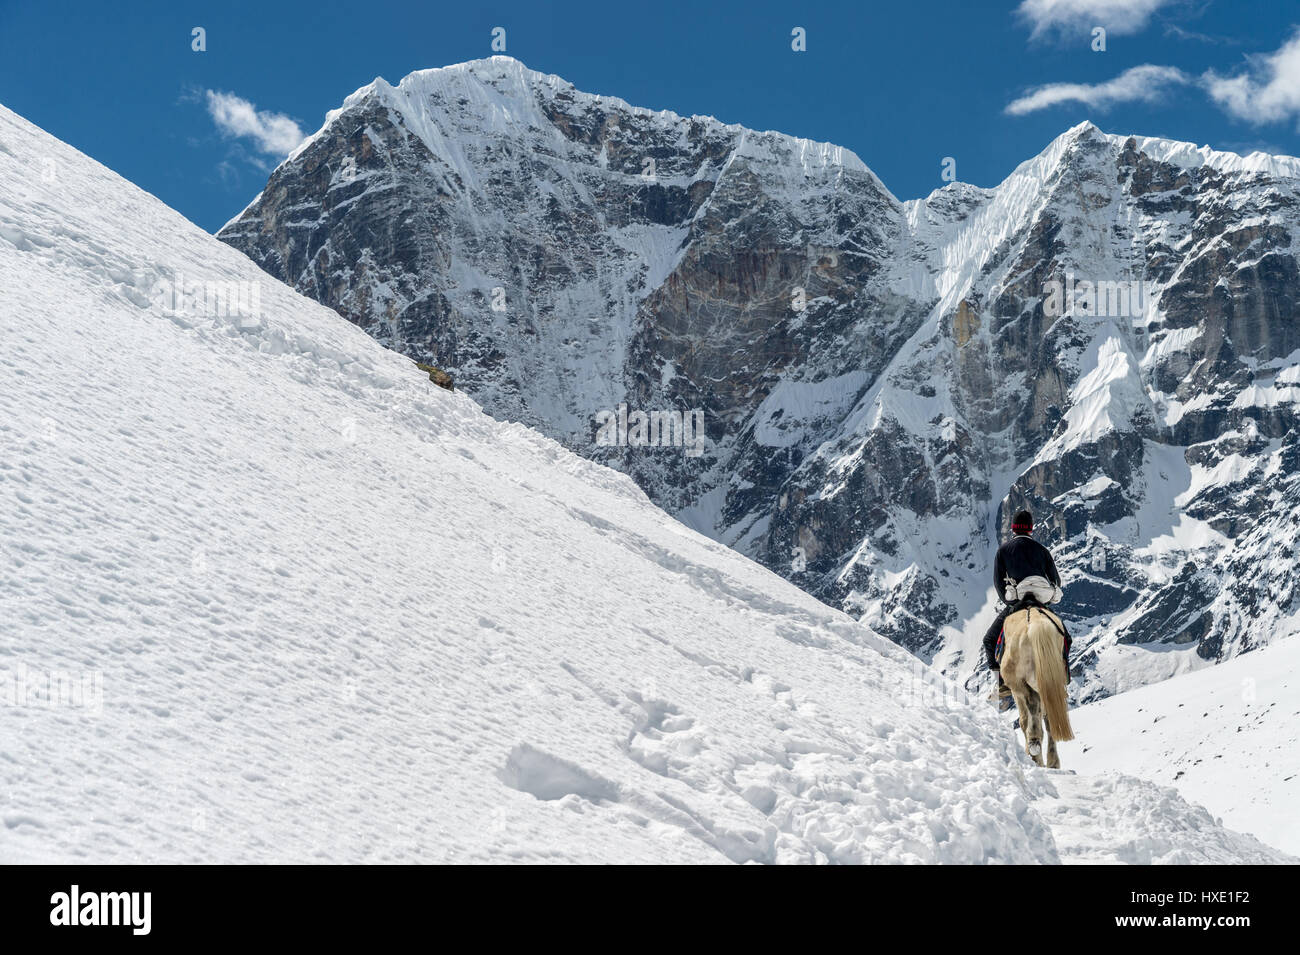 Regione di khumbu, in Nepal - 13 marzo 2015: un sherpa è in sella ad un cavallo con le alte montagne sullo sfondo Foto Stock